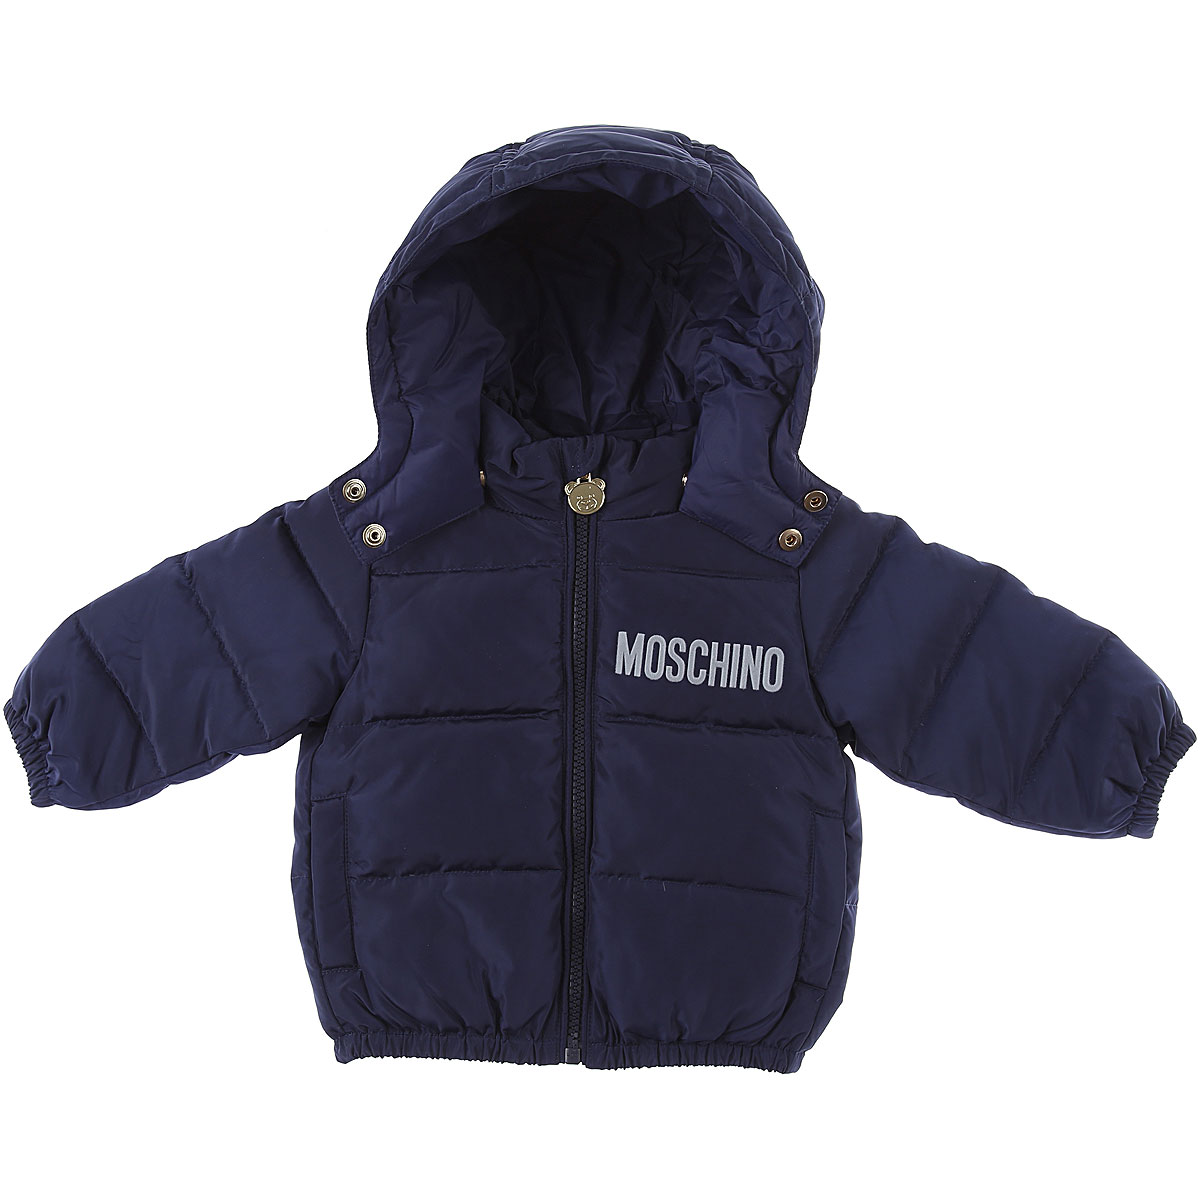 Moschino Baby Daunen Jacke für Jungen Günstig im Sale, Blau, Polyamid, 2017, 12 M 18M 24M 2Y 3Y 6M 9M